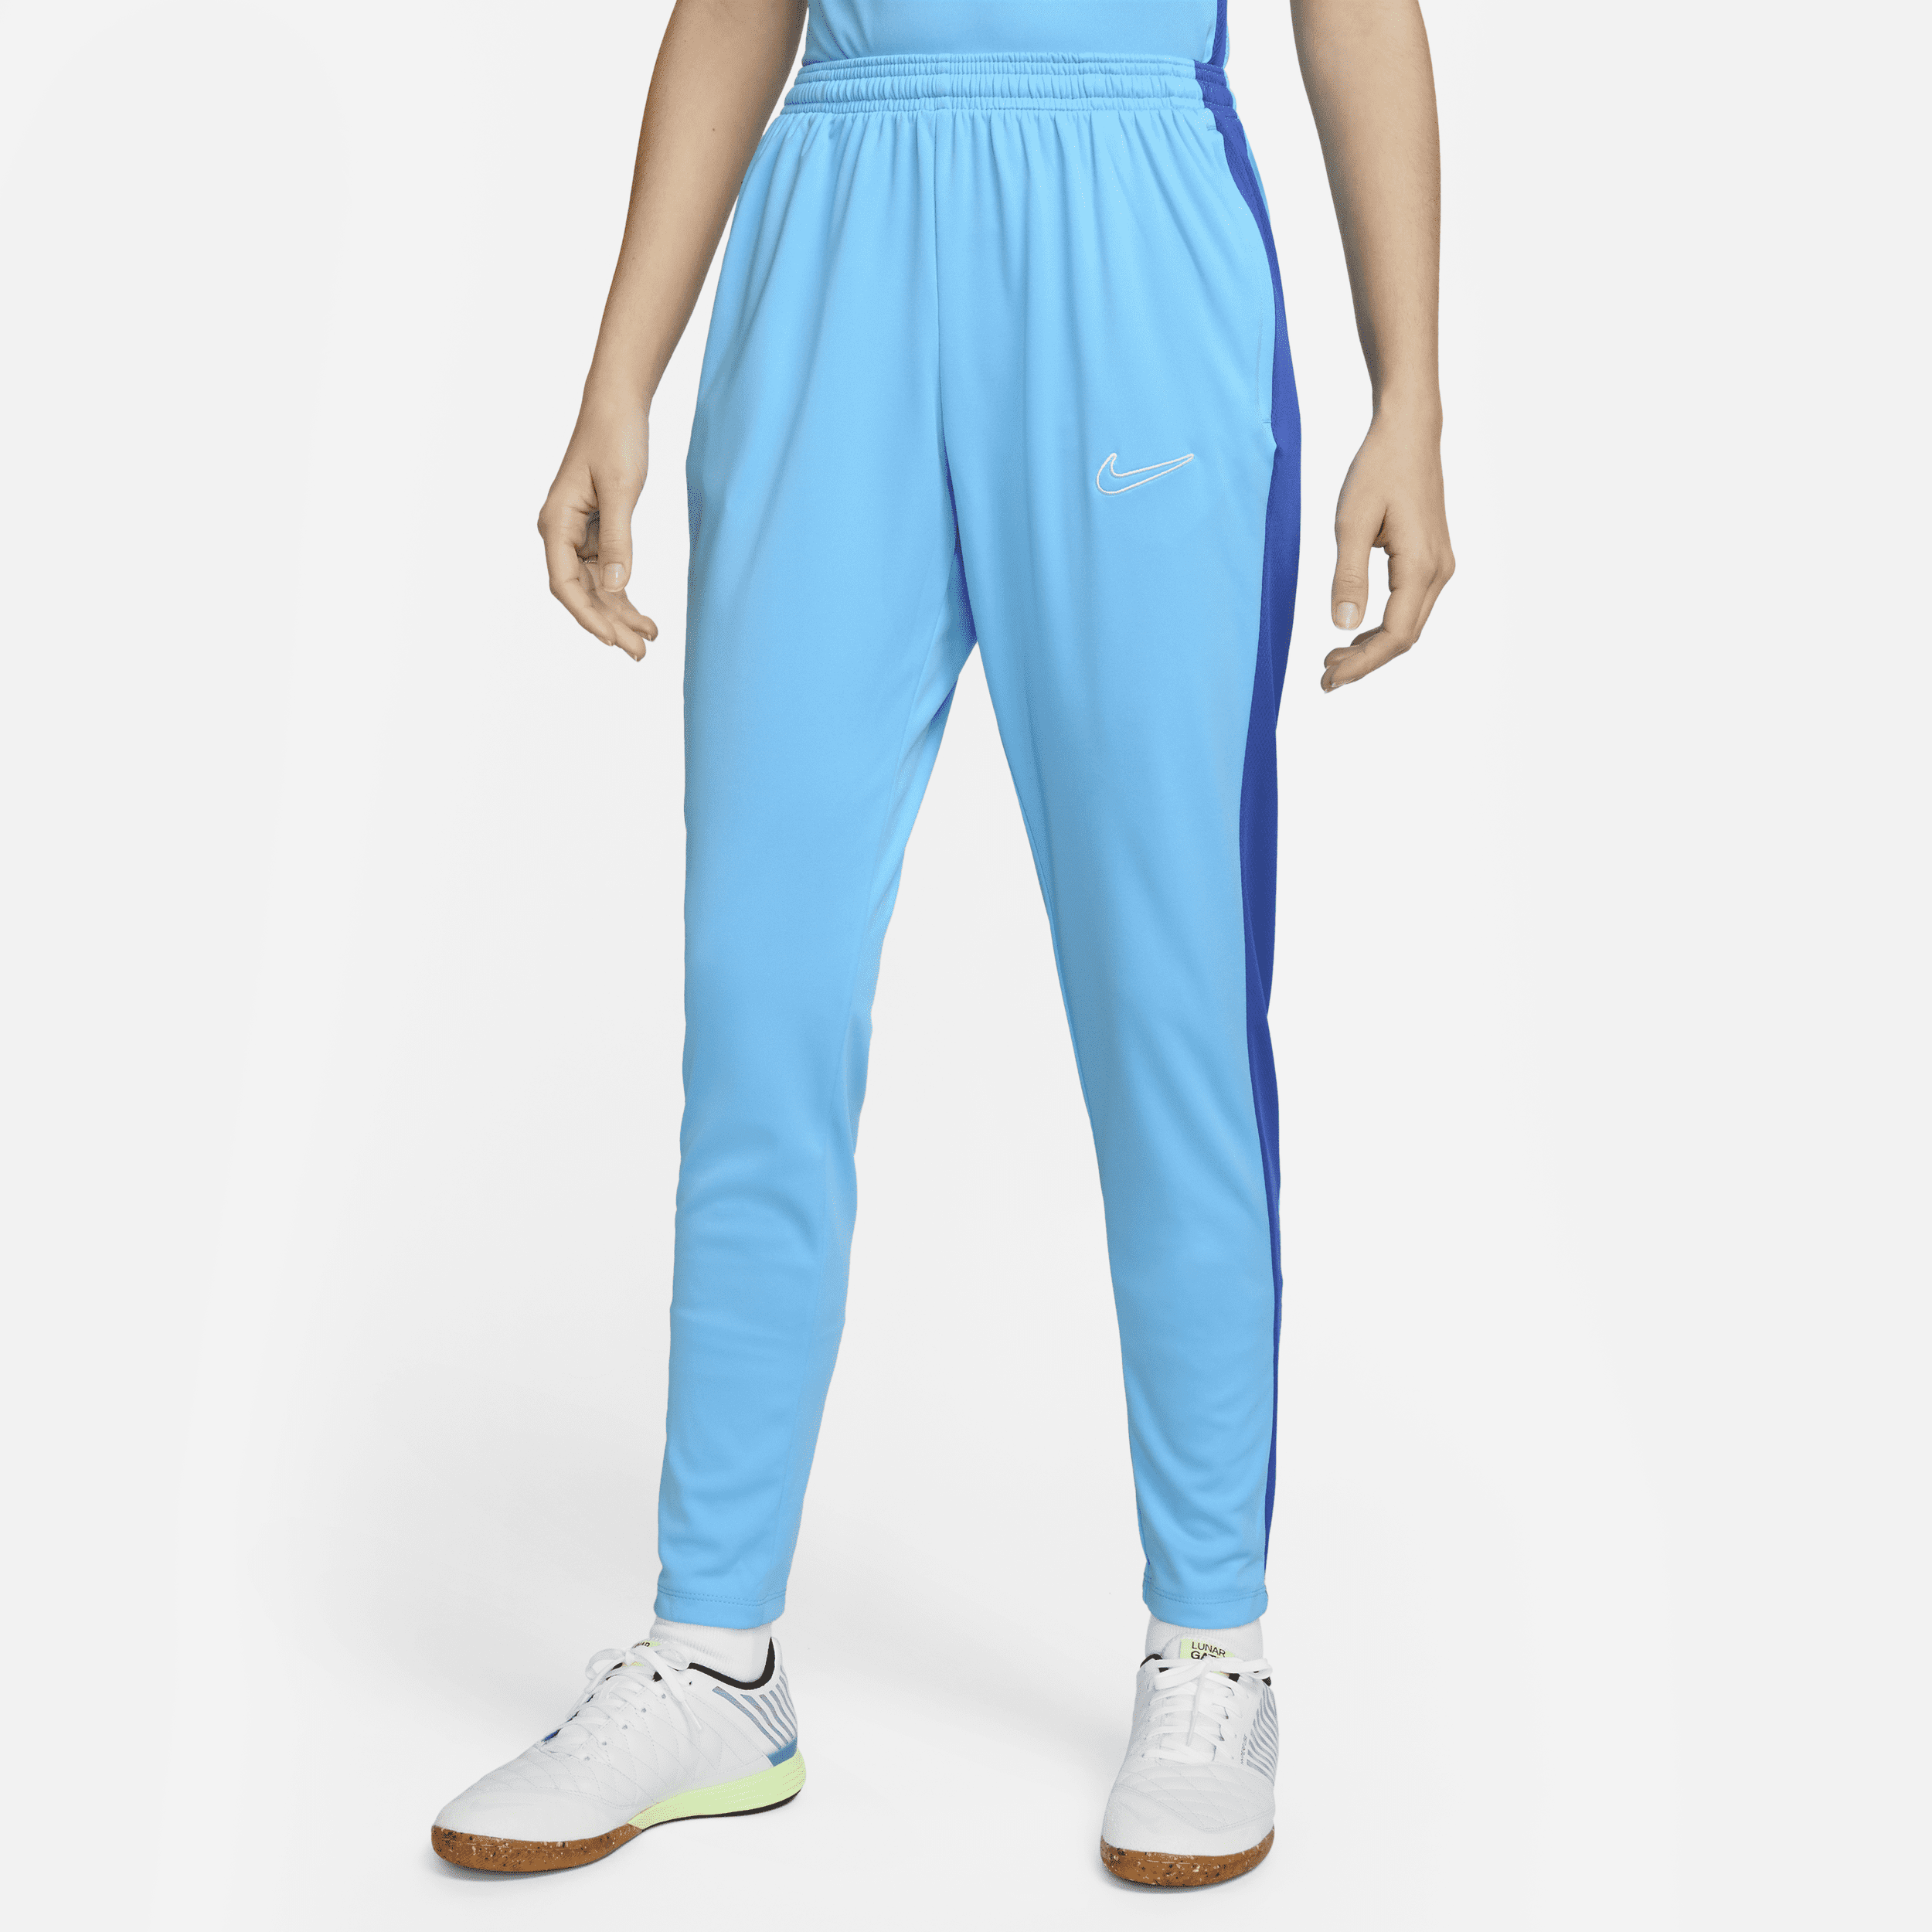 Nike Women's Dri-fit Academy Soccer Pants In Blue